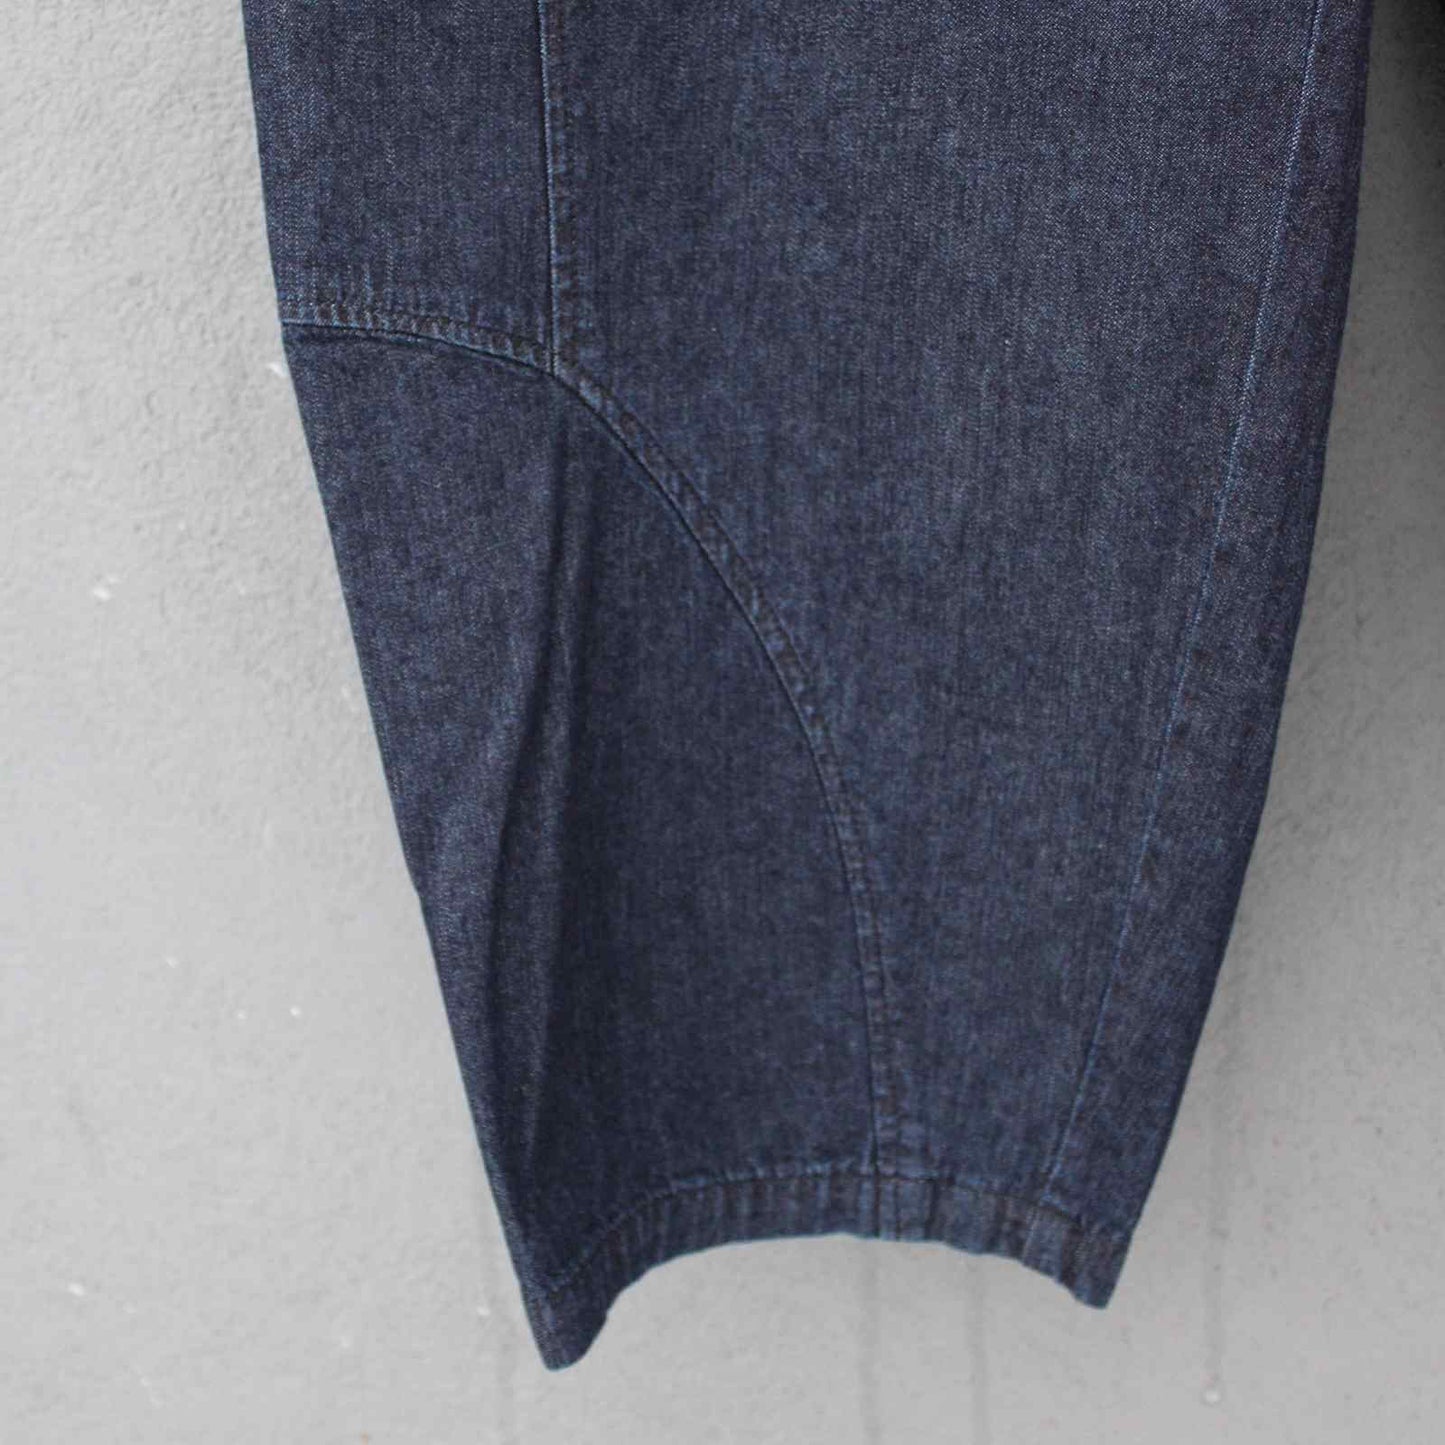 Syning detalje på Oska jeans bukseben